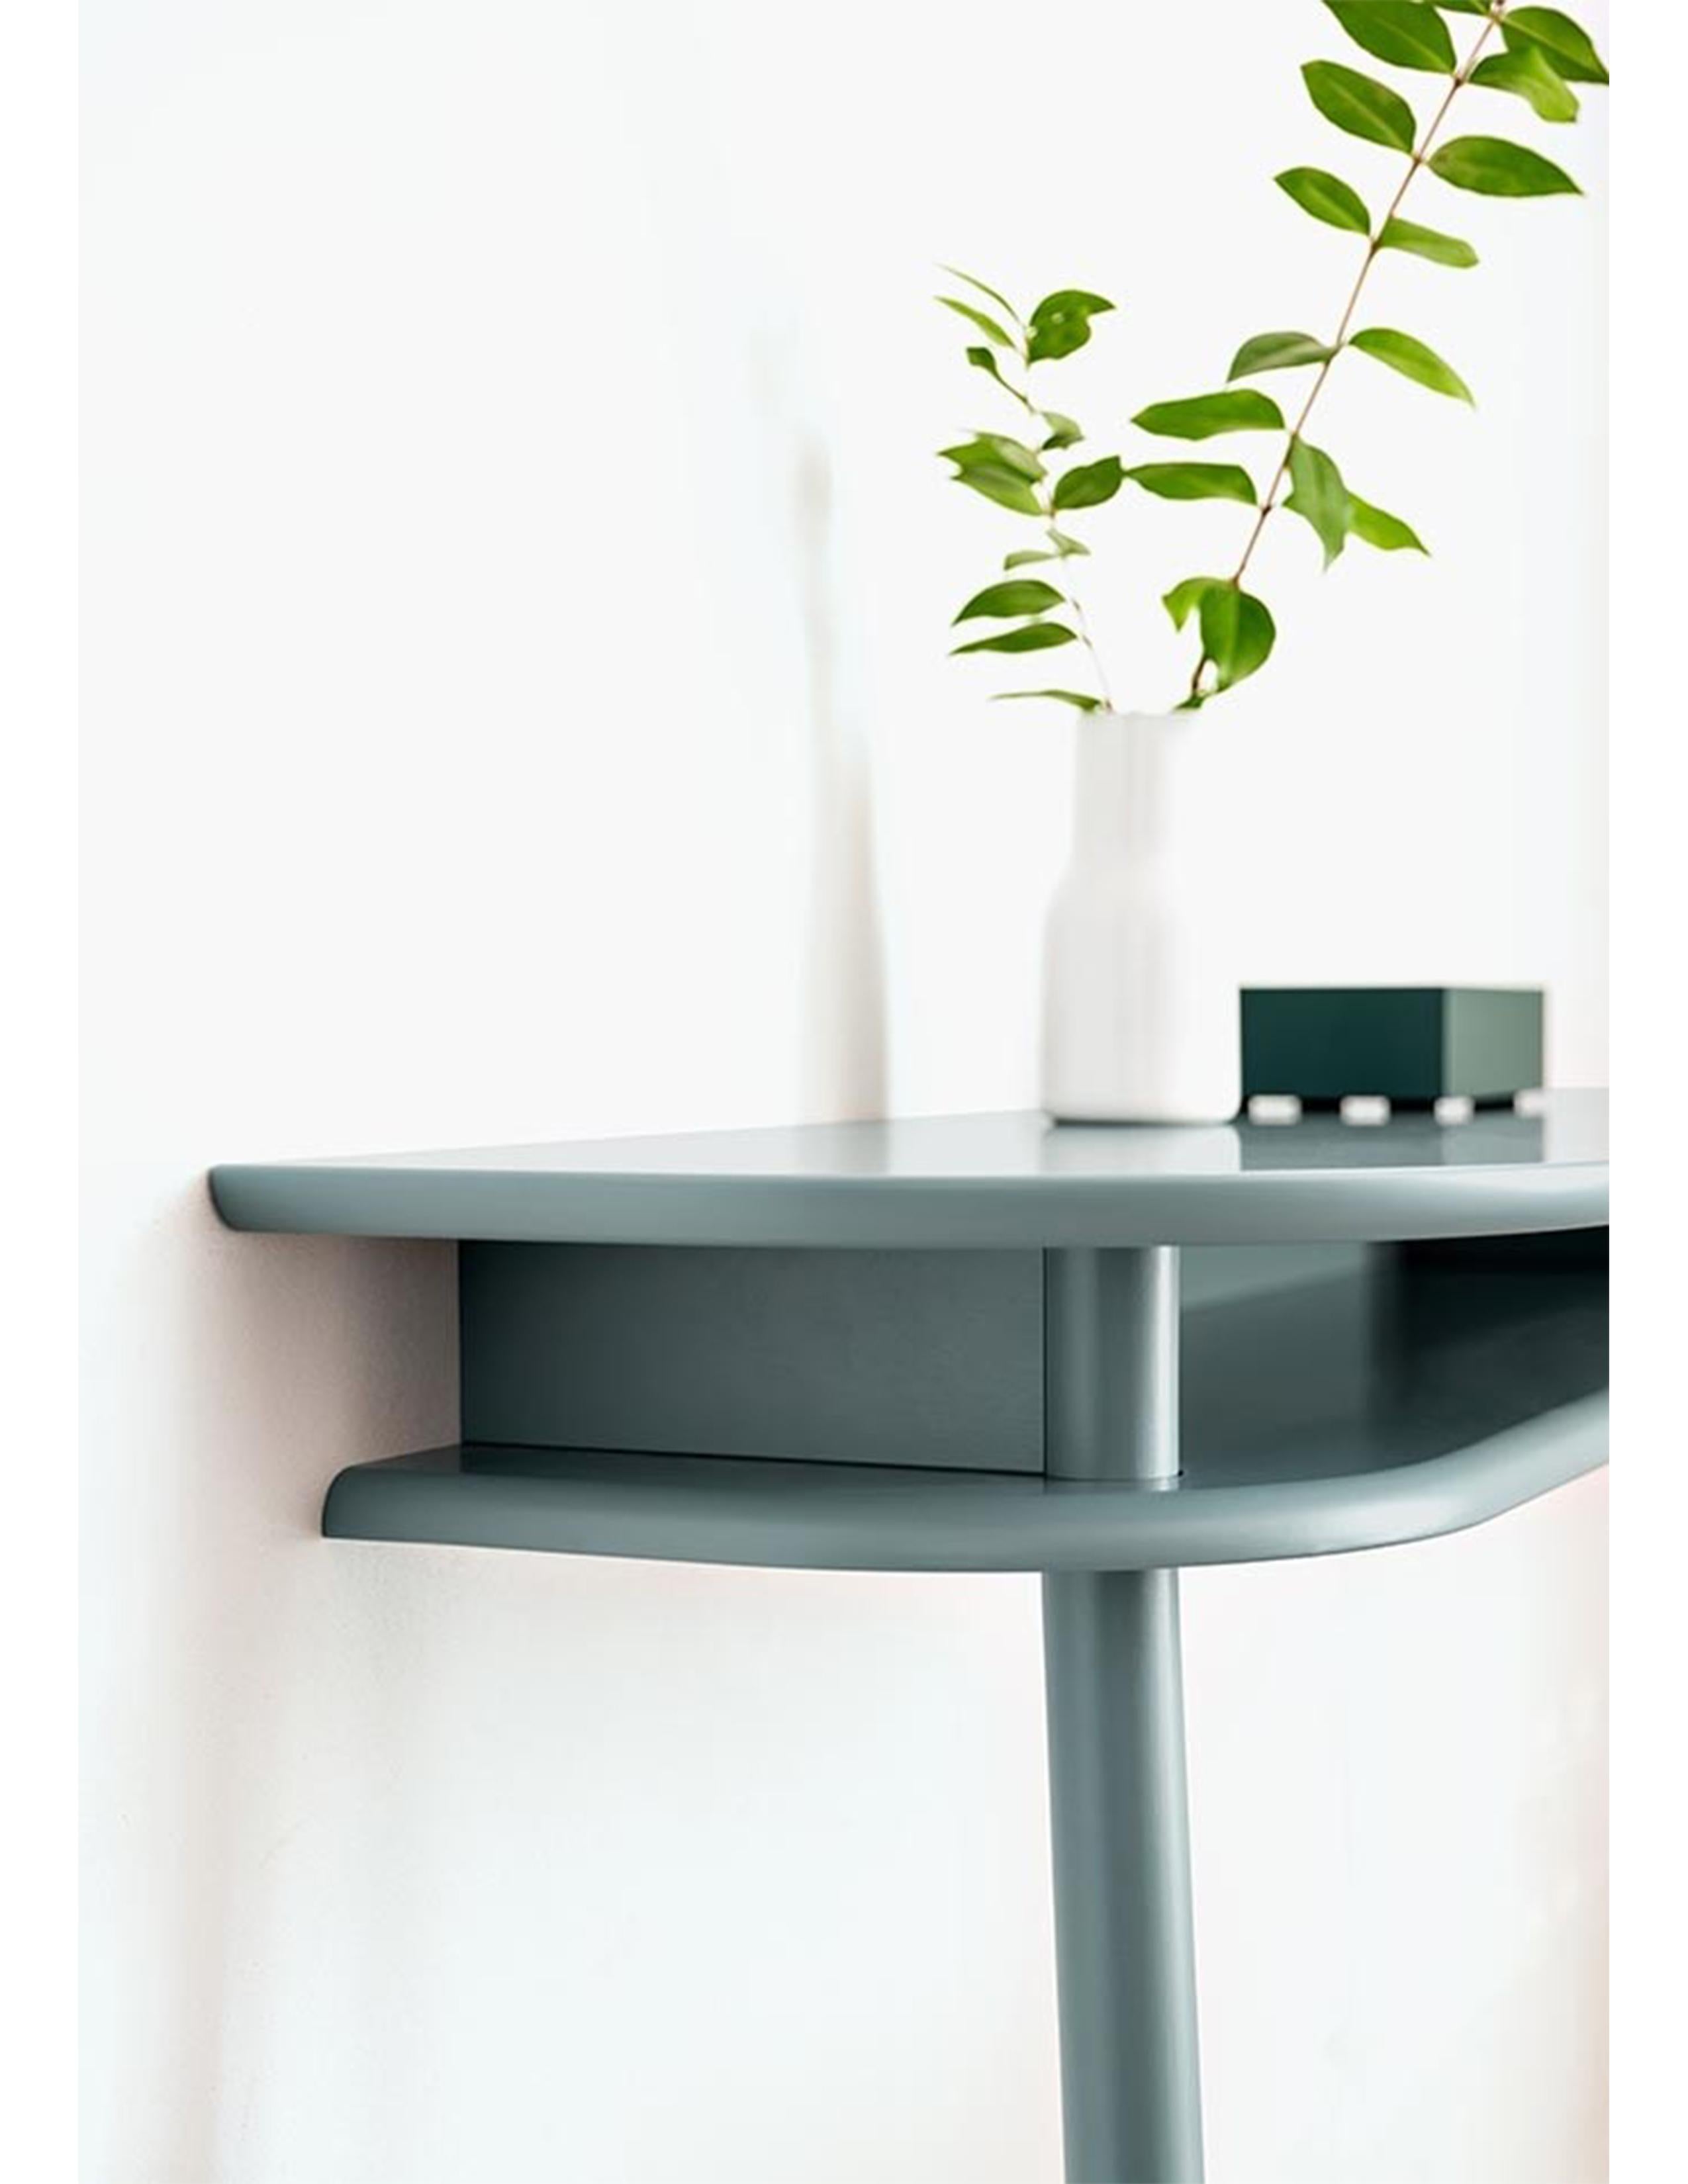 Der Tisch der Linie BUREAU verbindet klare Modernität mit zeitloser Klasse, wobei die abgerundeten Linien ein wesentliches Gestaltungsmerkmal sind. BUREAU hat die perfekte Größe für einen Esstisch, ist aber auch ein ideales Schaufenster für kreative